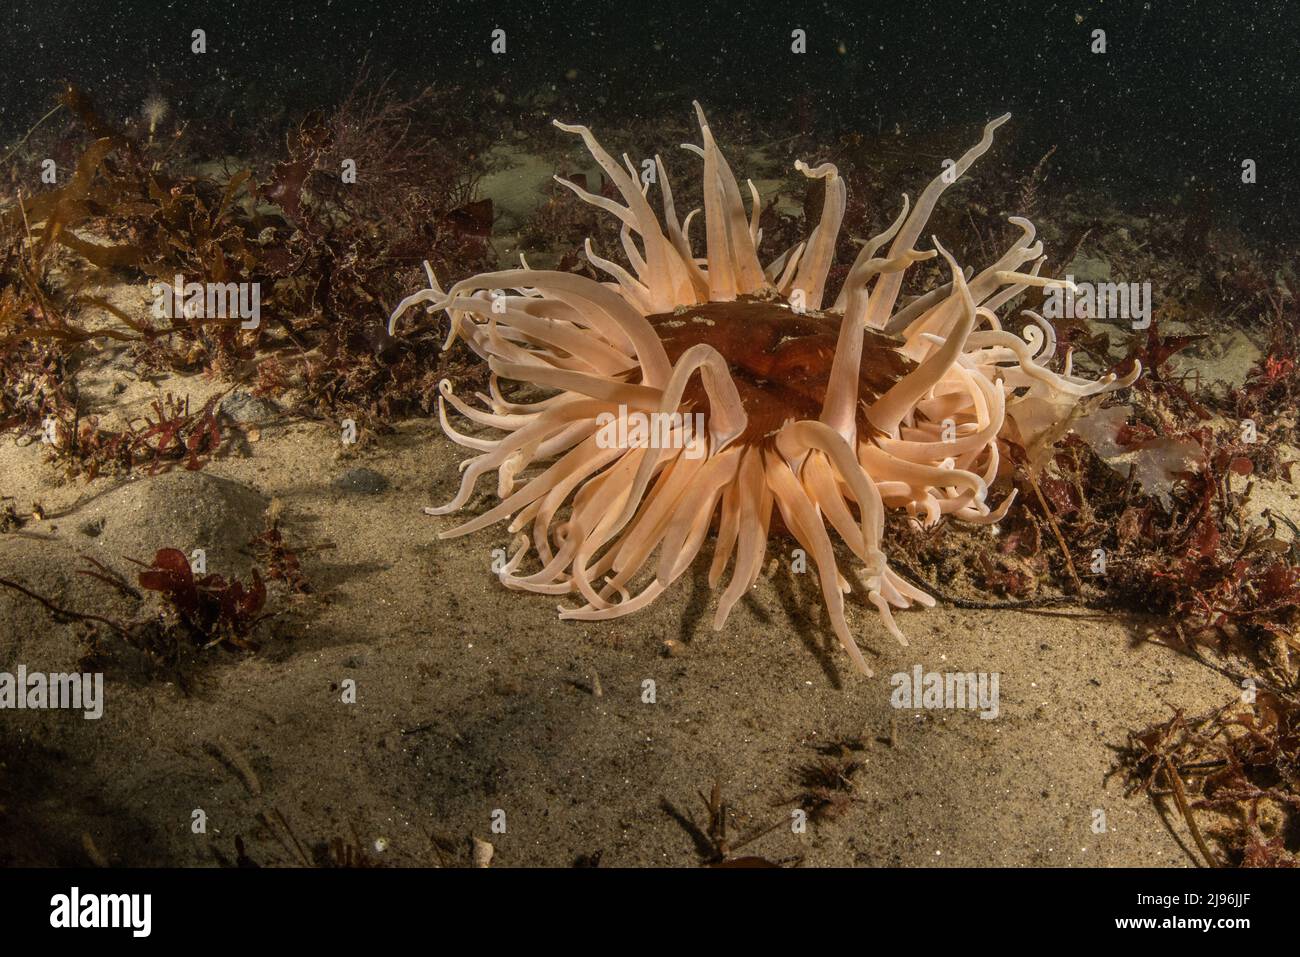 Urticina columbiana, l'anemone di sabbia rossa crosta - un invertebrato marino sul fondo dell'oceano nella baia di Monterey, California, Stati Uniti d'America del Nord. Foto Stock